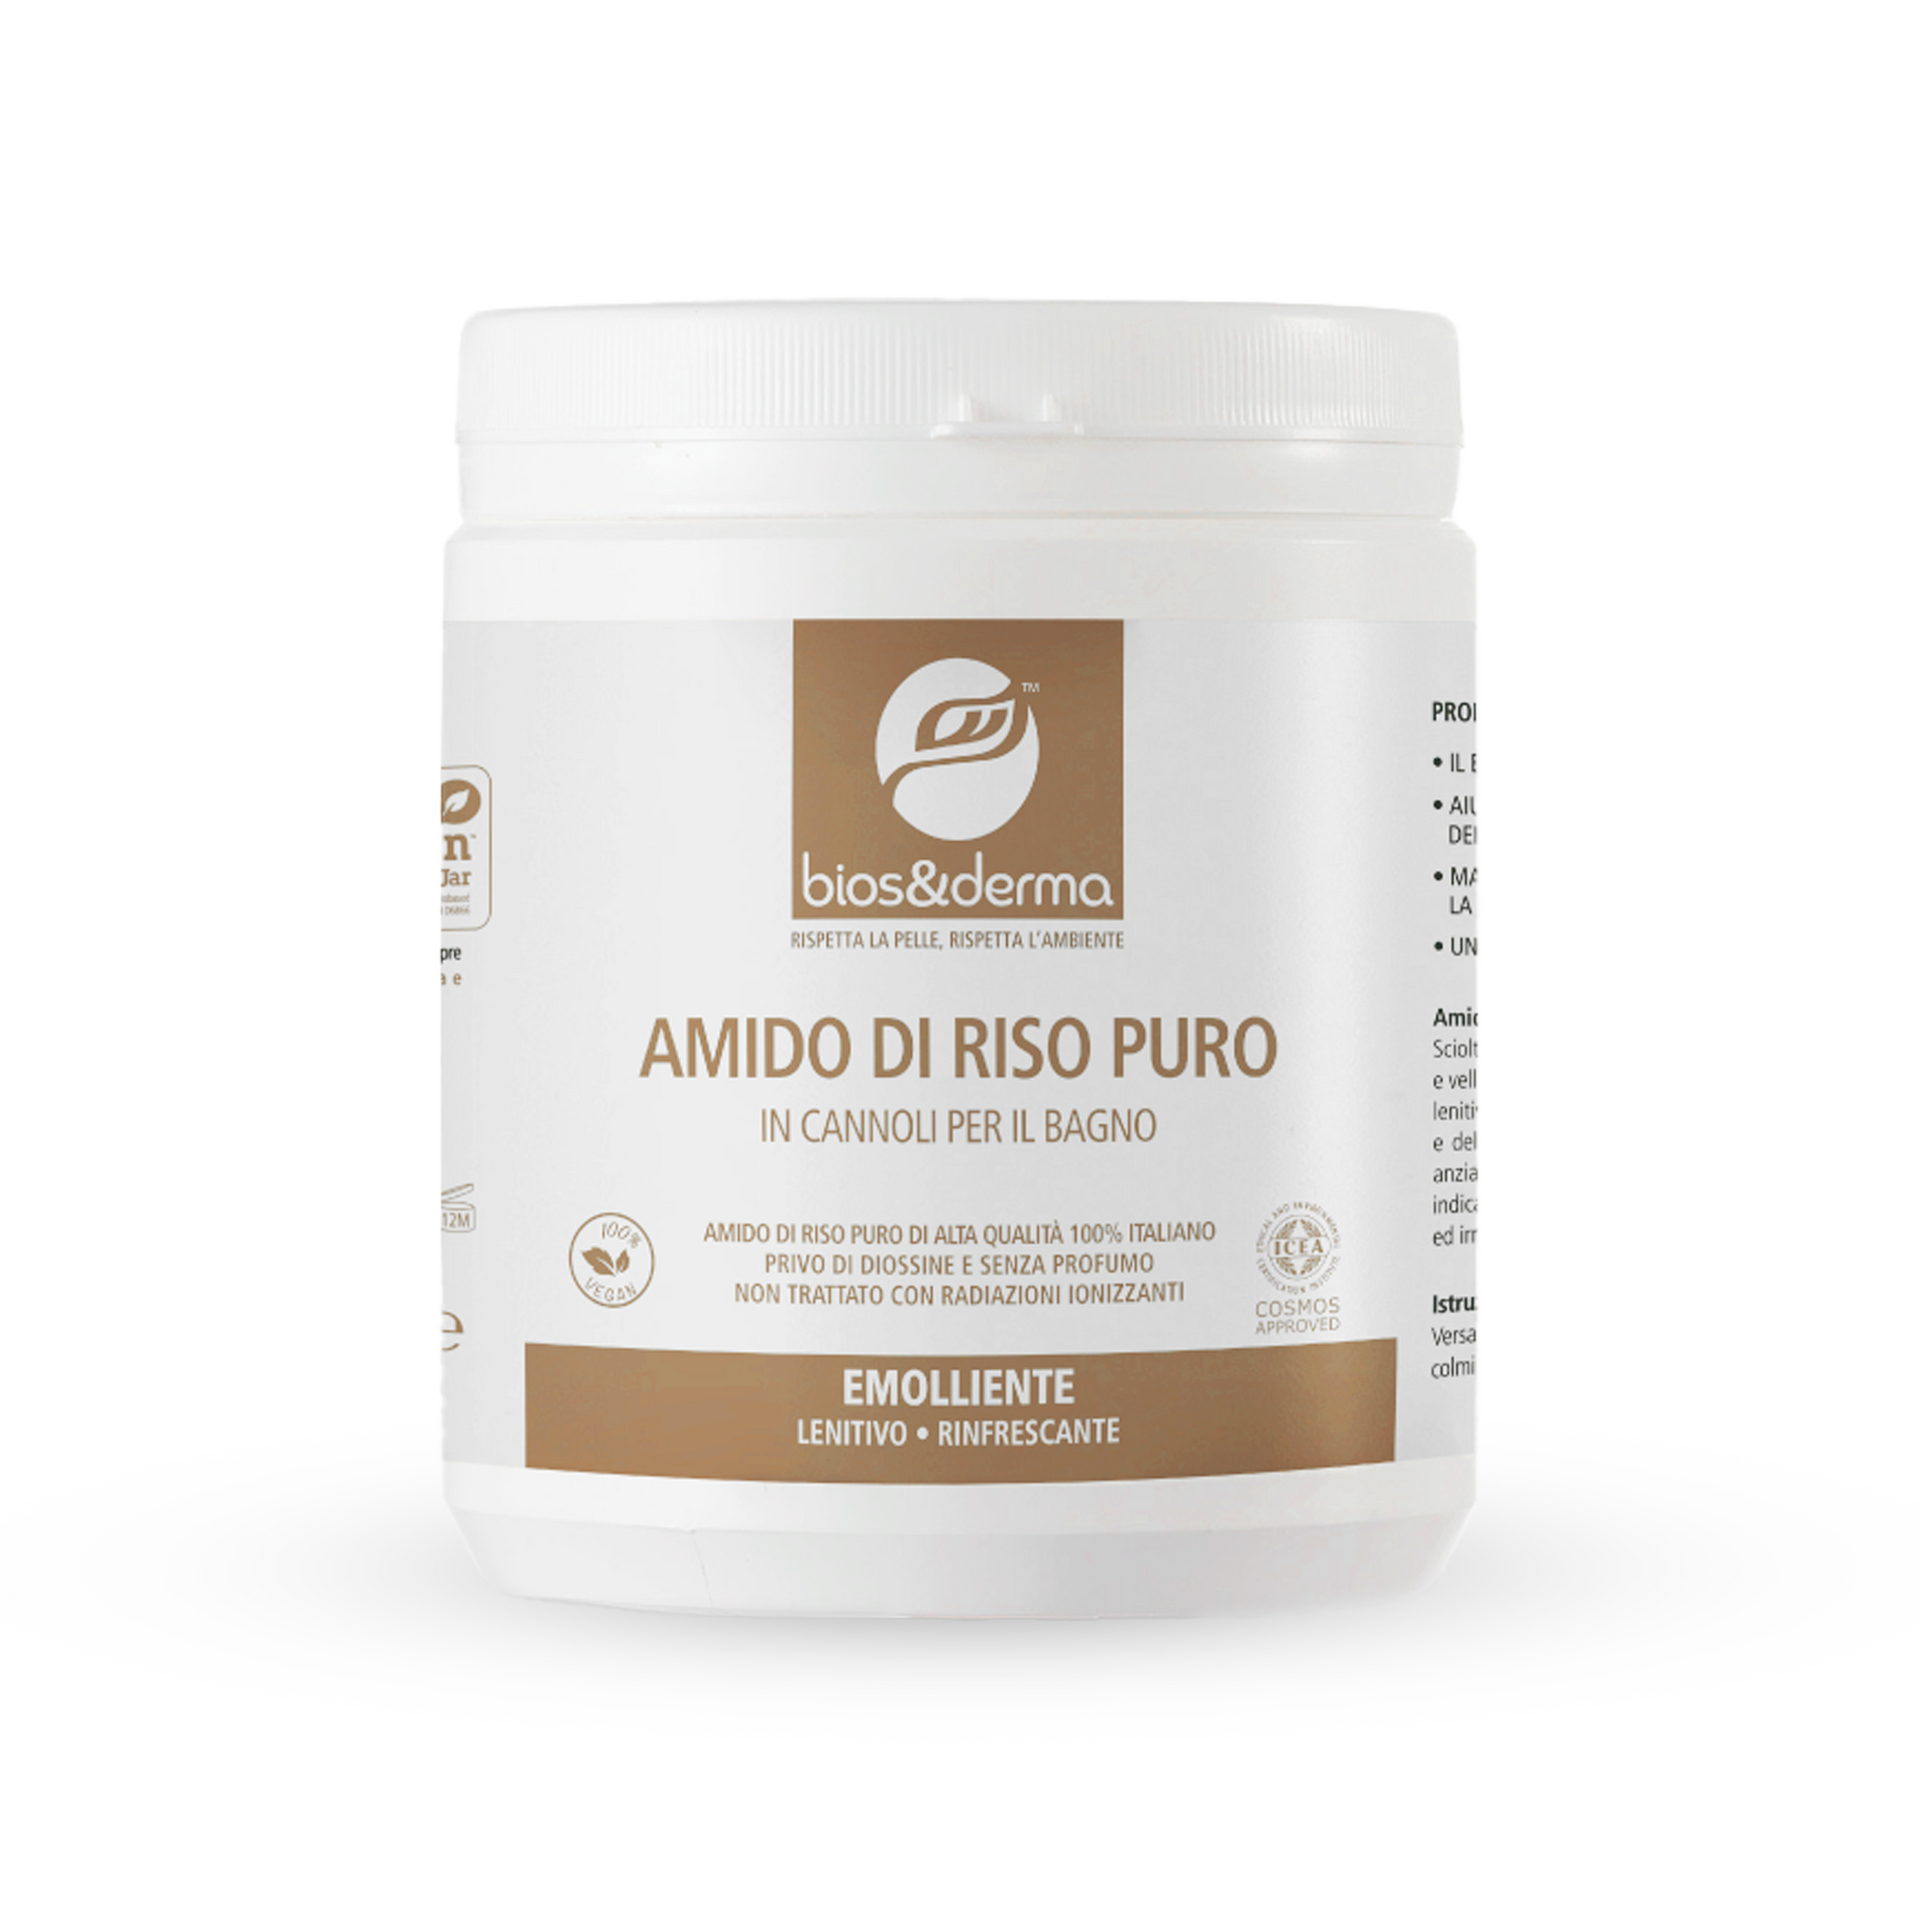 AMIDO DI RISO PURO IN CANNOLI (350g) – Bios&Derma